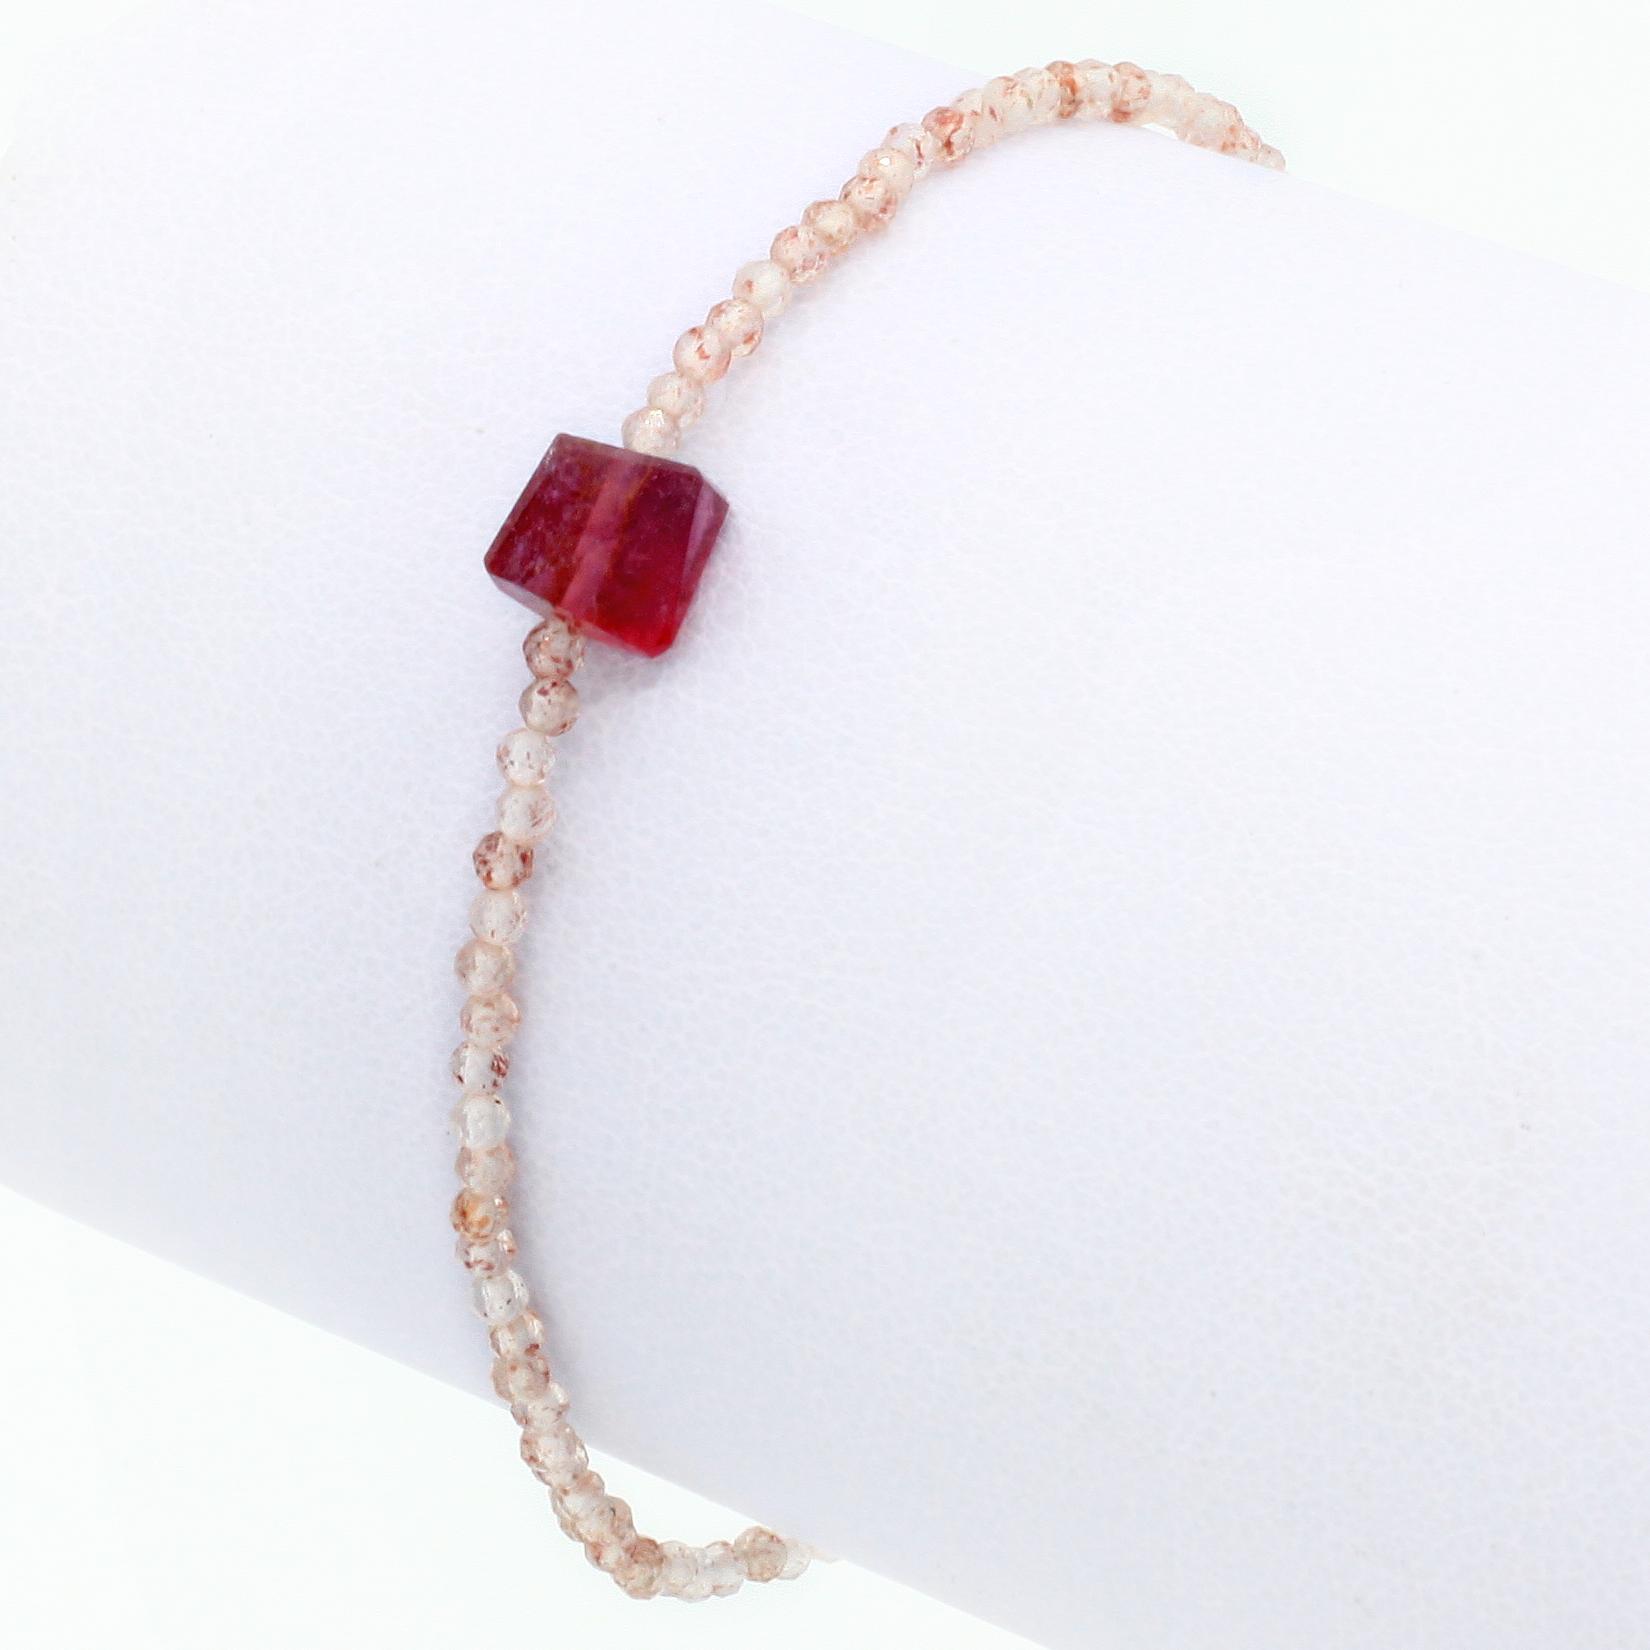 Margaret Solow Jewelry | Strawberry Quartz + Tourmaline Beaded Bracelet | Firecracker